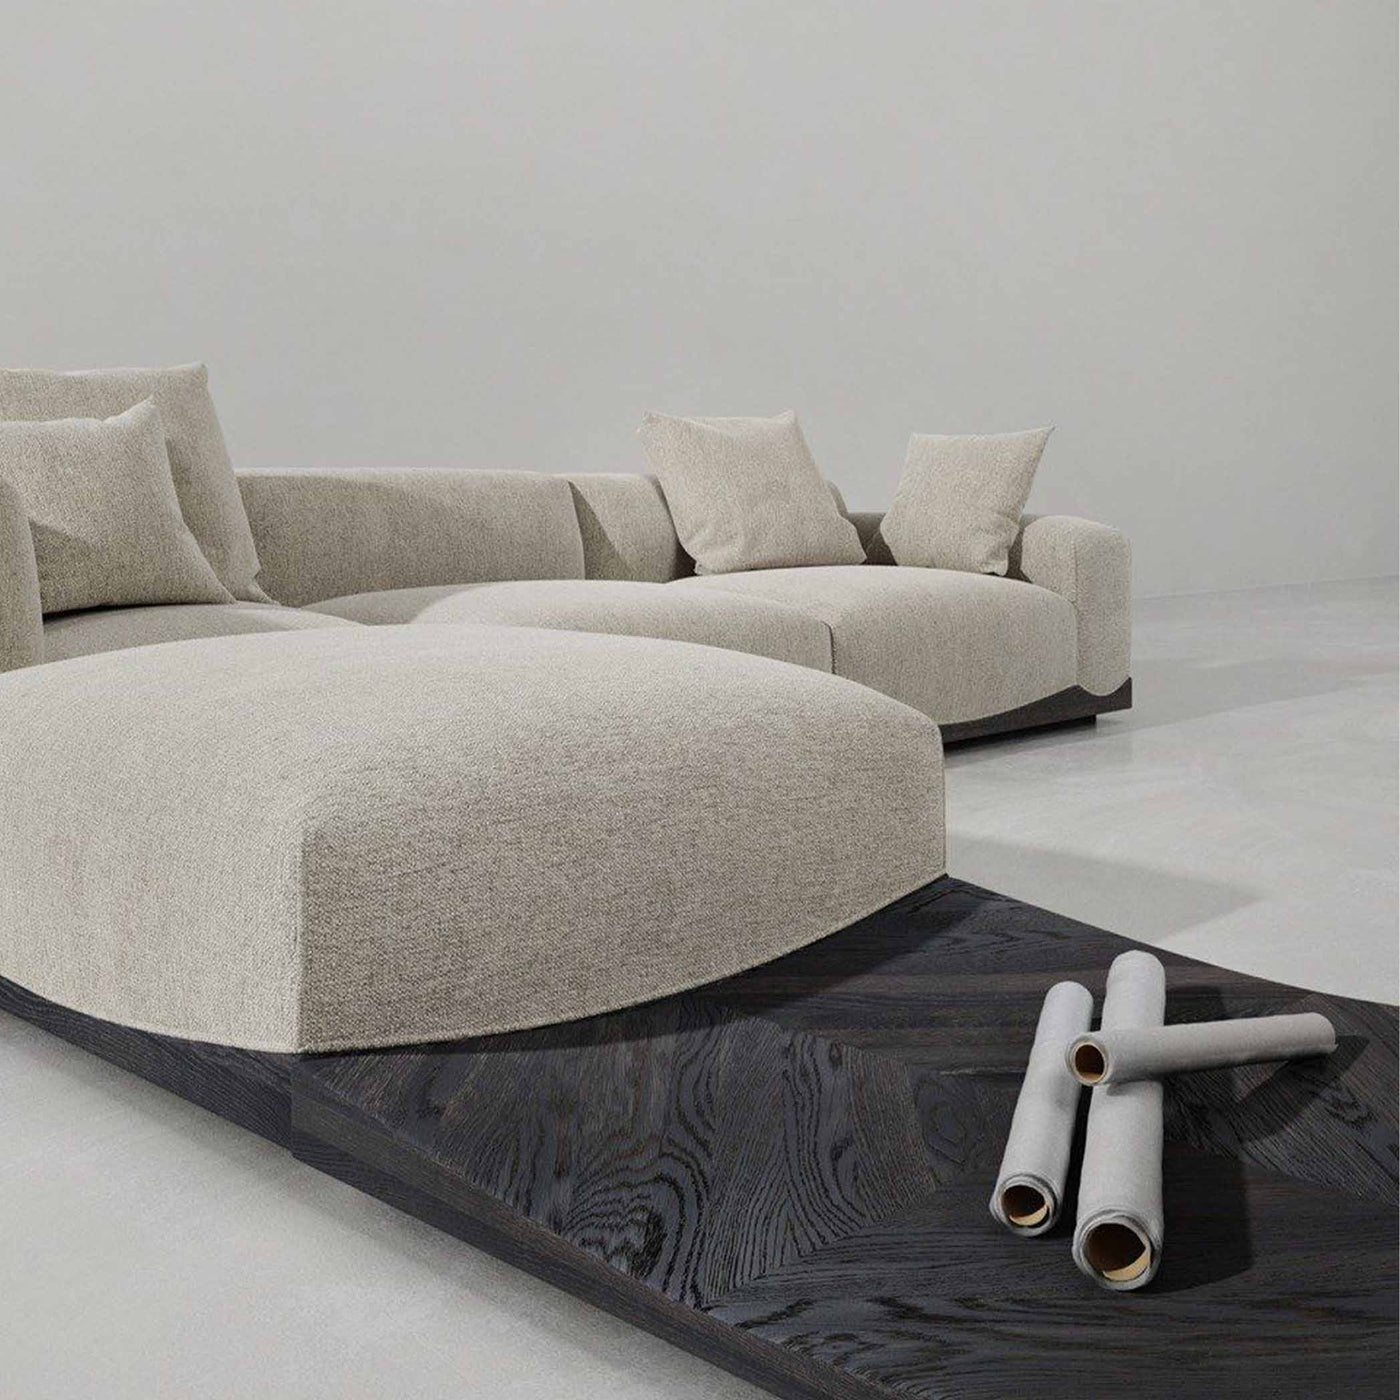 Collection Joss de District Eight : sept modules uniques pour un sofa sectionnel flexible et élégant. Confort suprême et inspiration architecturale asiatique